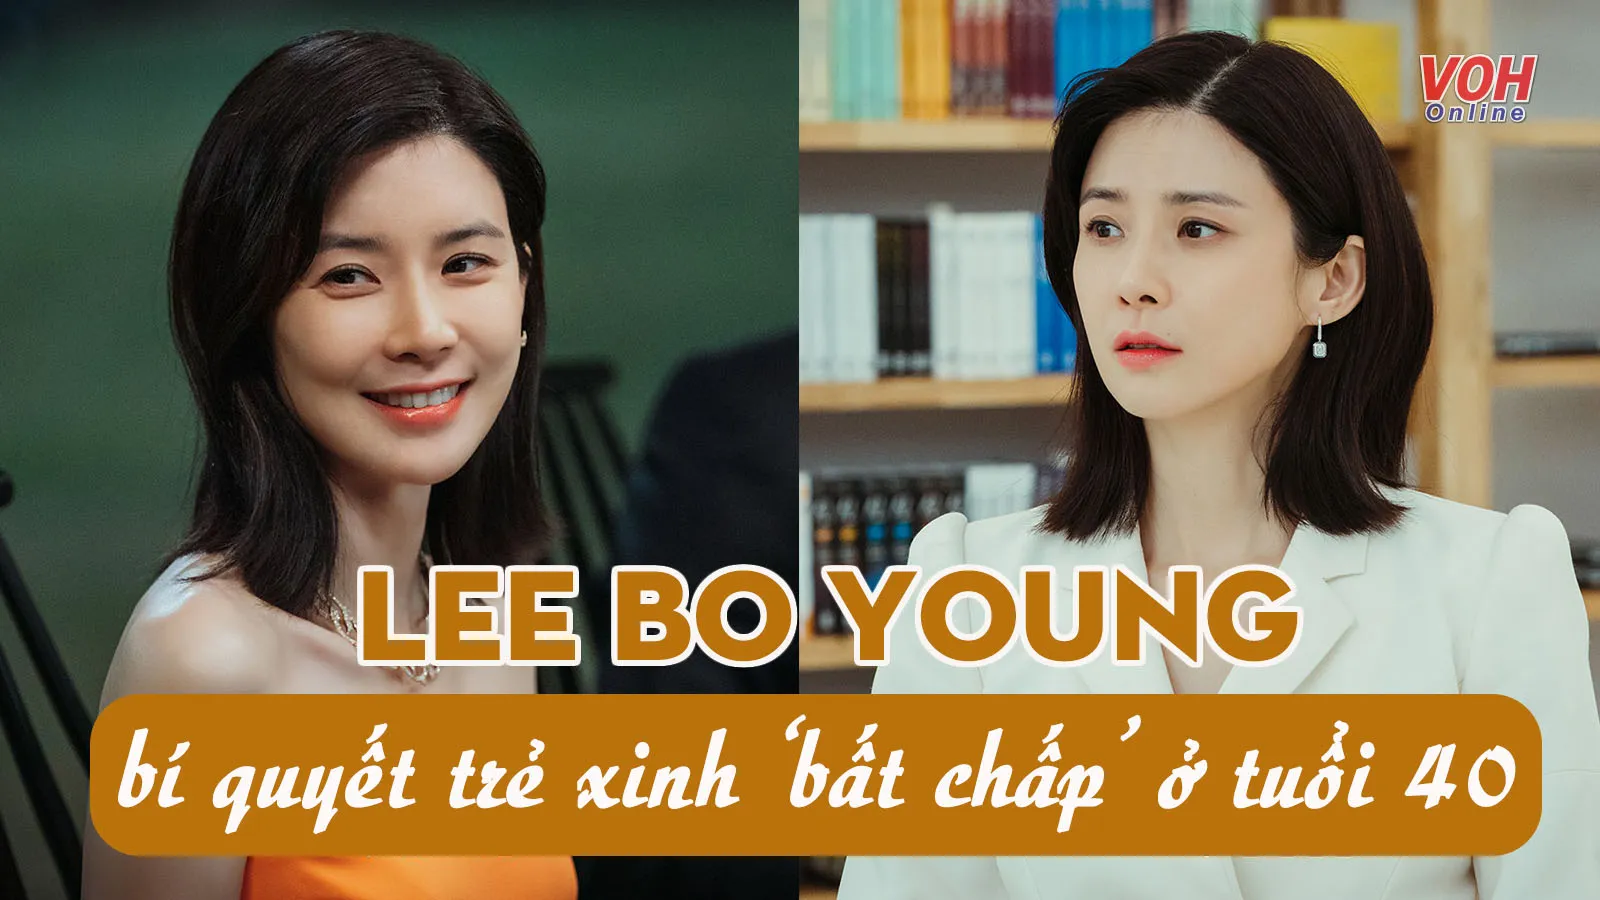 5 bí quyết giúp Lee Bo Young trẻ trung, xinh đẹp bất chấp tuổi tác